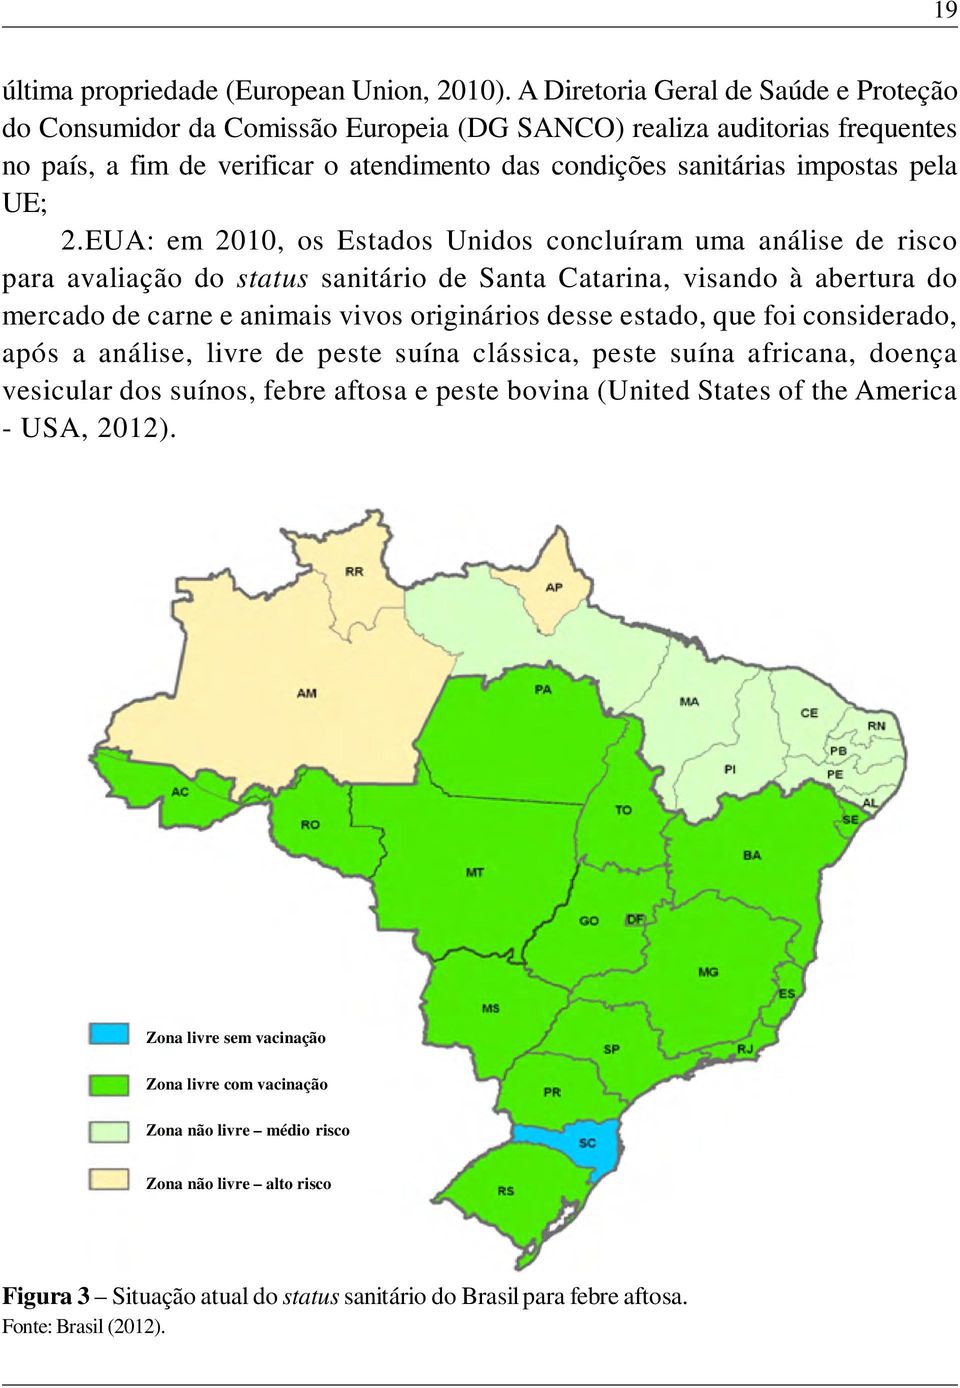 2.EUA: em 2010, os Estados Unidos concluíram uma análise de risco para avaliação do status sanitário de Santa Catarina, visando à abertura do mercado de carne e animais vivos originários desse